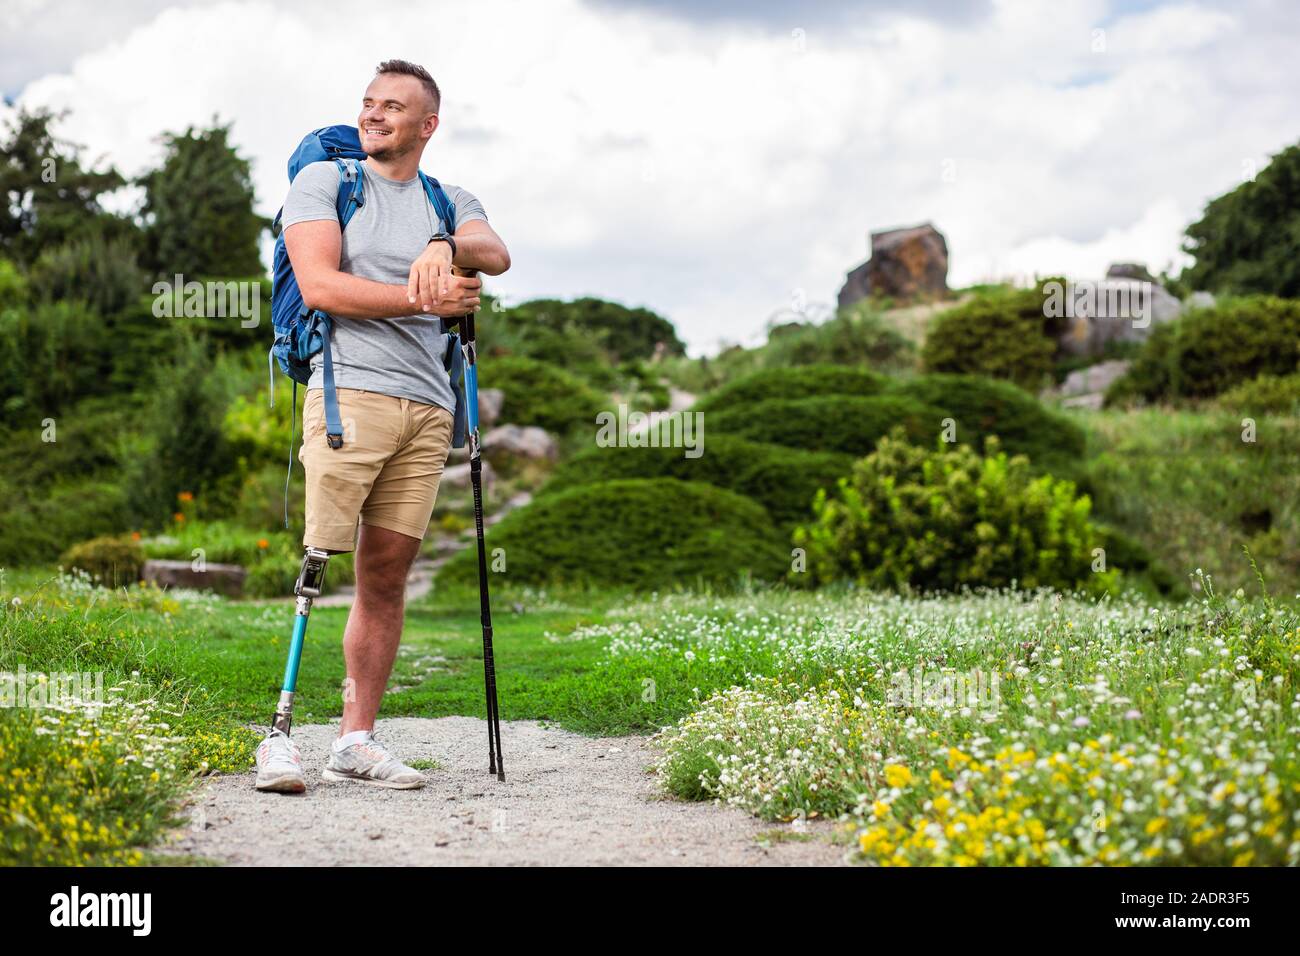 Freundliche Mann mit Prothese mit Nordic Walking Stöcke Stockfoto